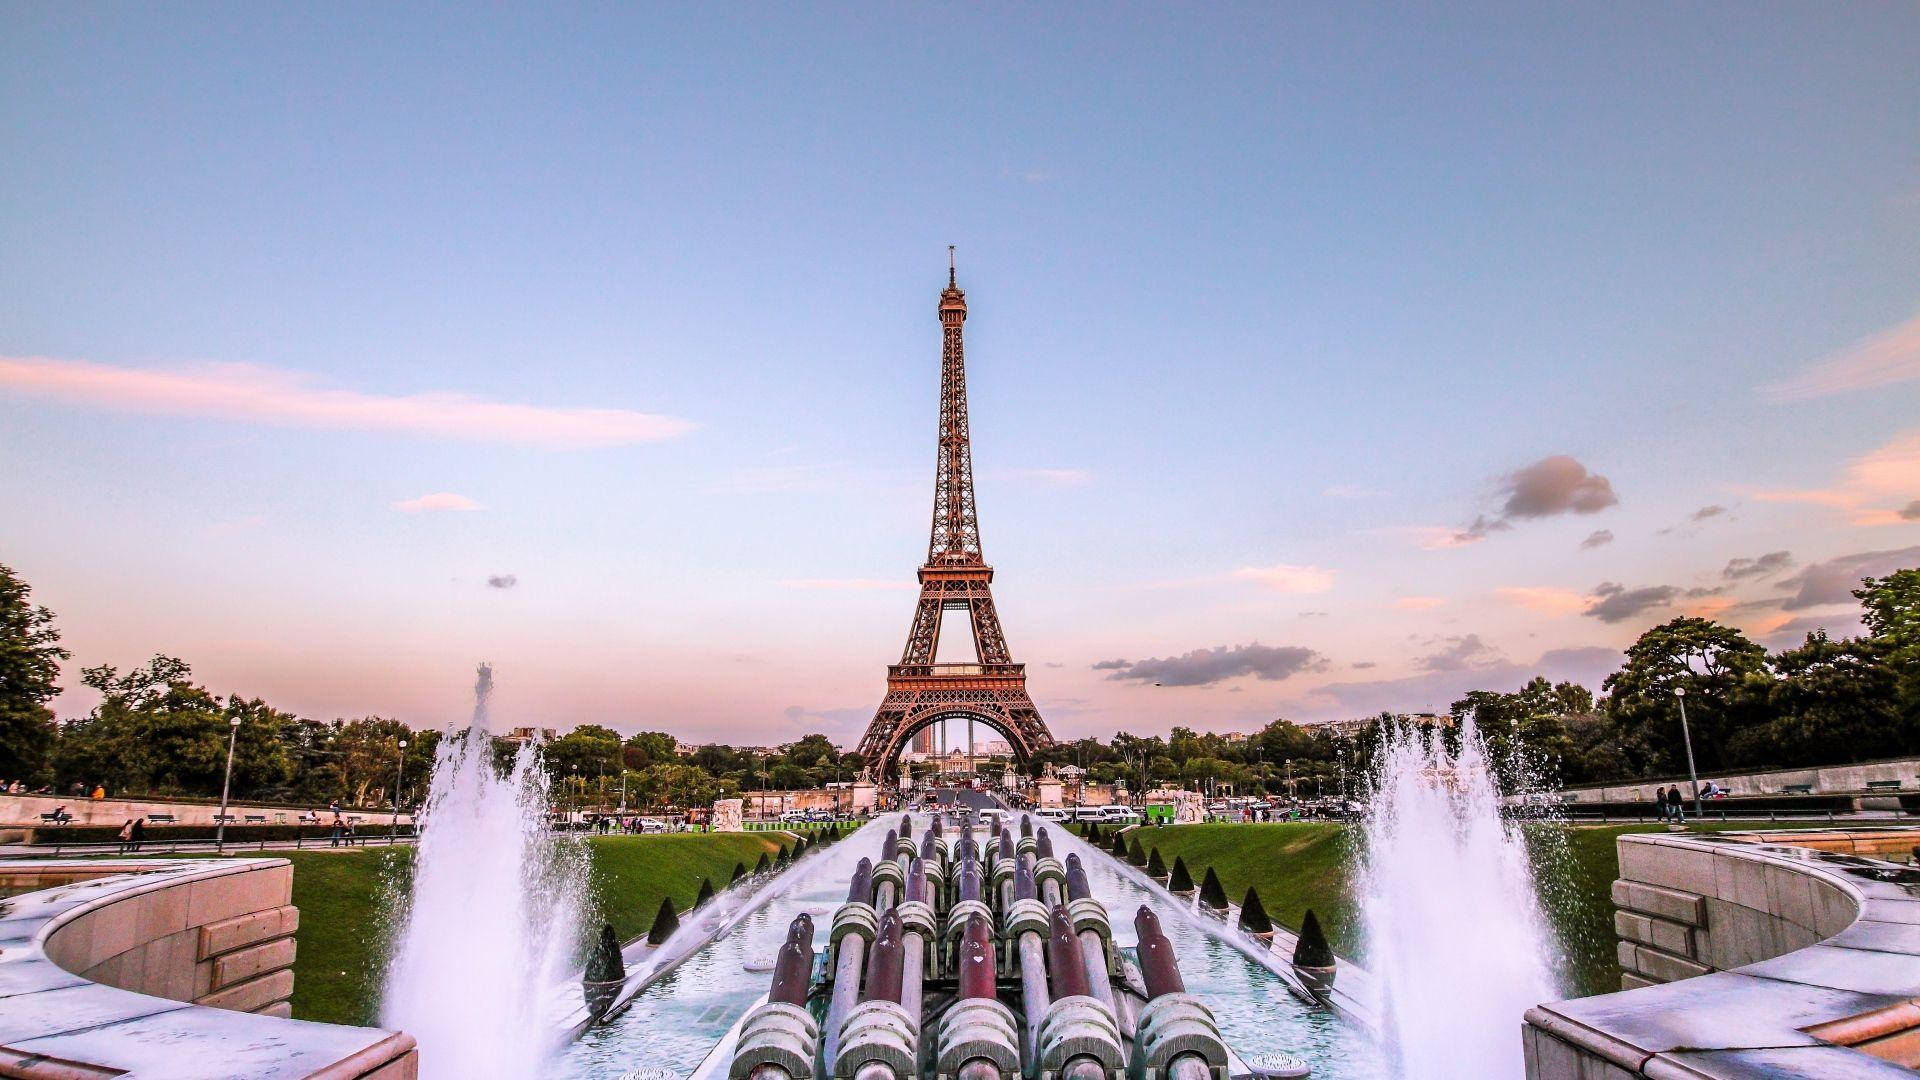 Unavista Romantica Dell'iconica Torre Eiffel, Che Brilla Nelle Luci Di Parigi. Sfondo